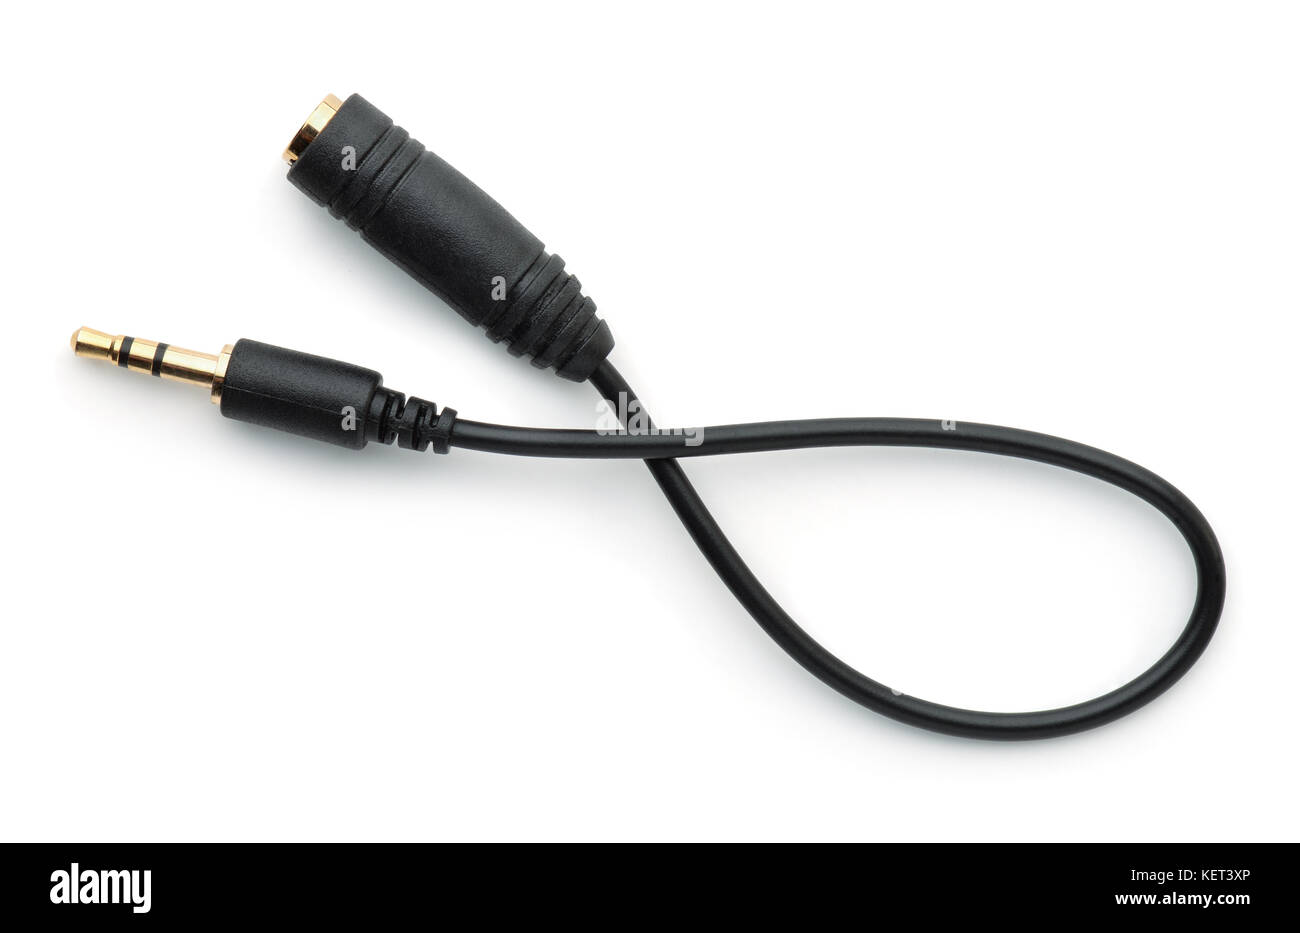 RCA female adapter to 3.5 mm mono male mini-jack, black plastic body